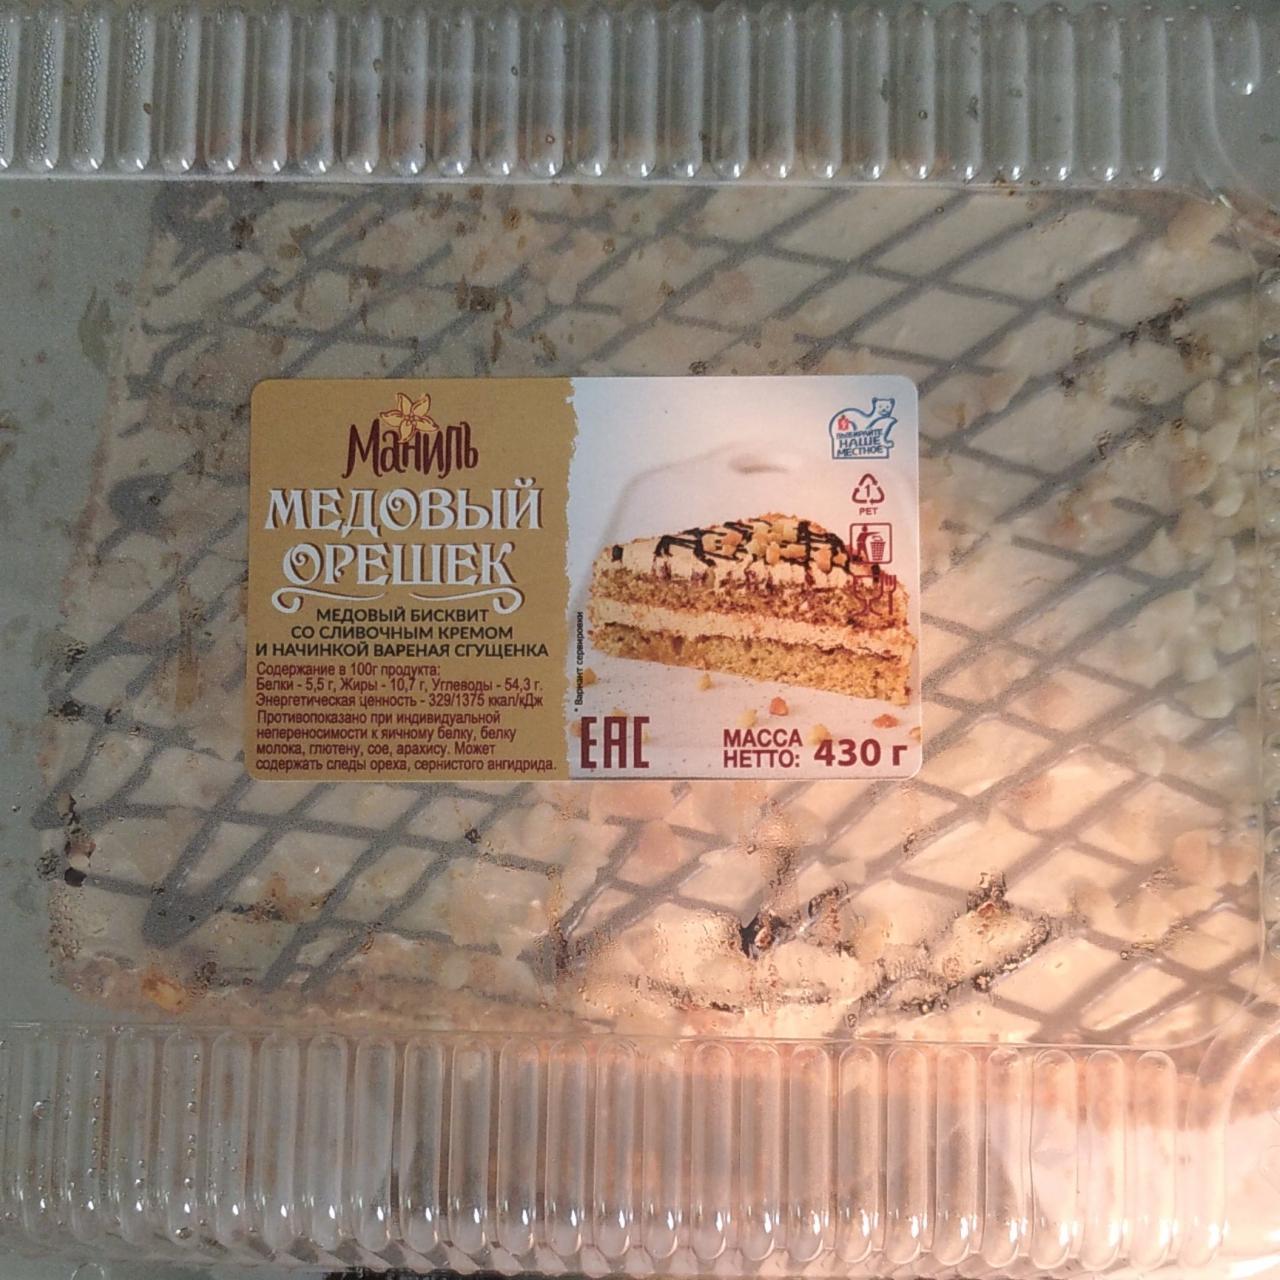 Фото - Медовый орешек - Медовый бисквит со сливочным кремом вареная сгущенка Маниль